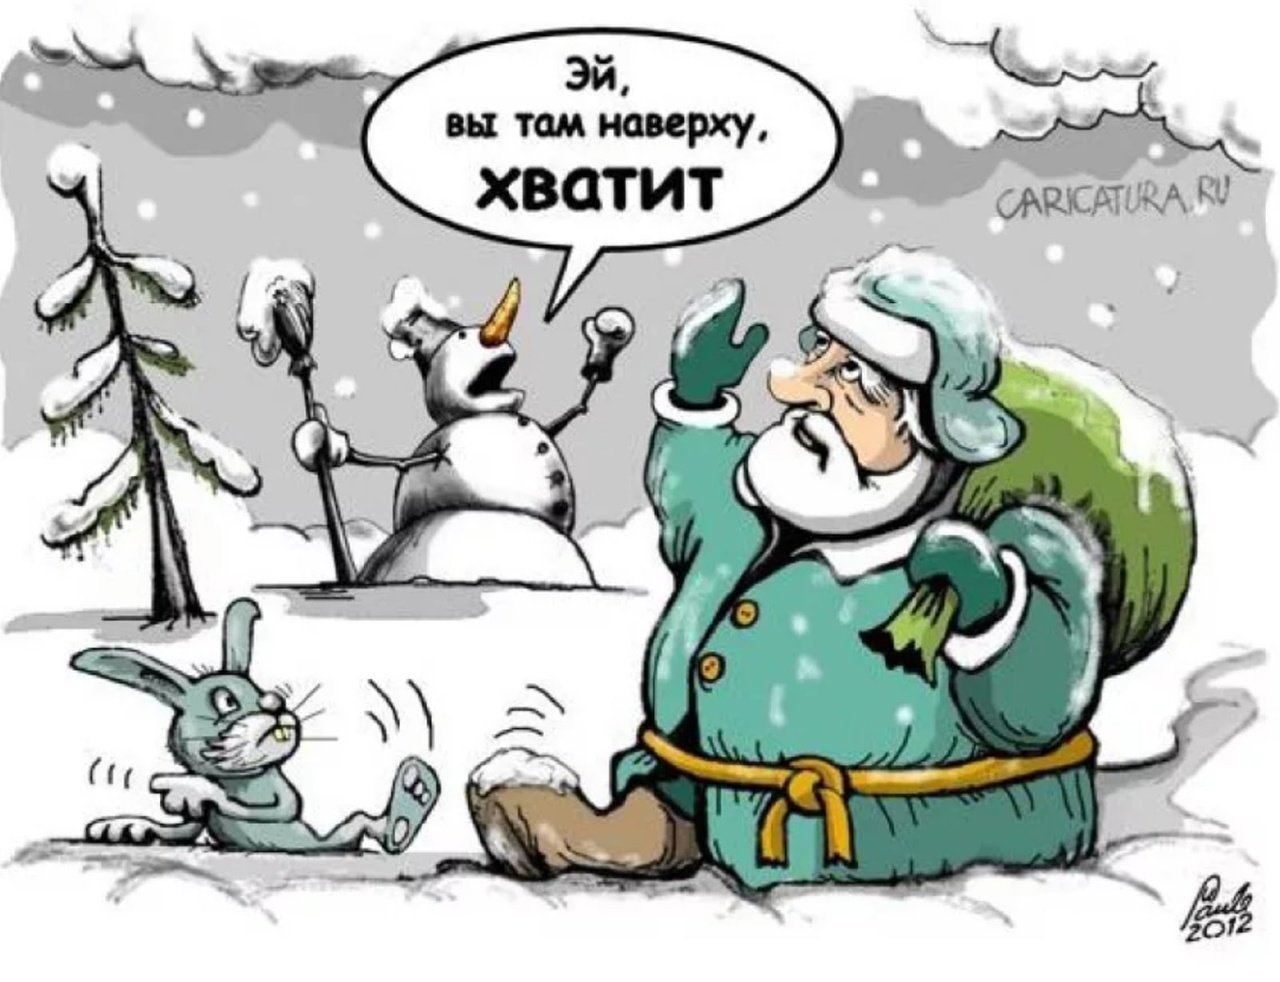 Там снежок. Снегопад карикатура. Уборка снега карикатура. Карикатура зима. Шутки про уборку снега.